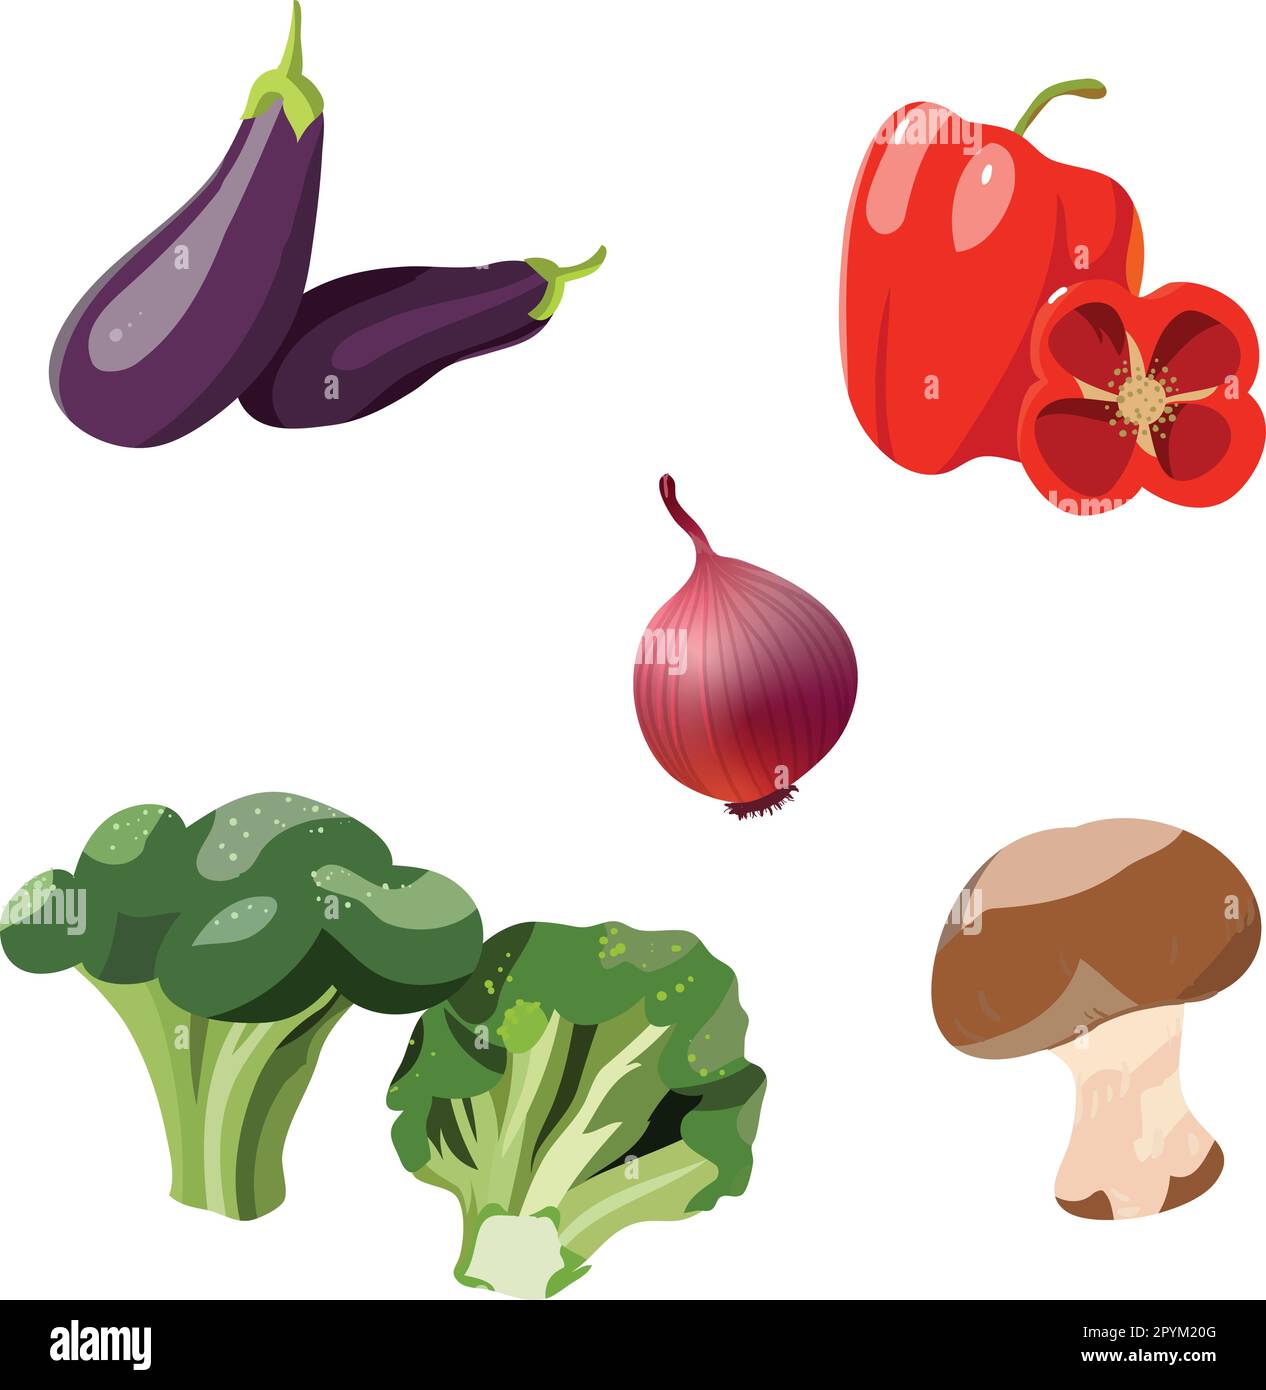 légumes illustrations vectorielles du brocoli, de la tomate, des champignons, des poivrons rouges et de l'aubergine Illustration de Vecteur